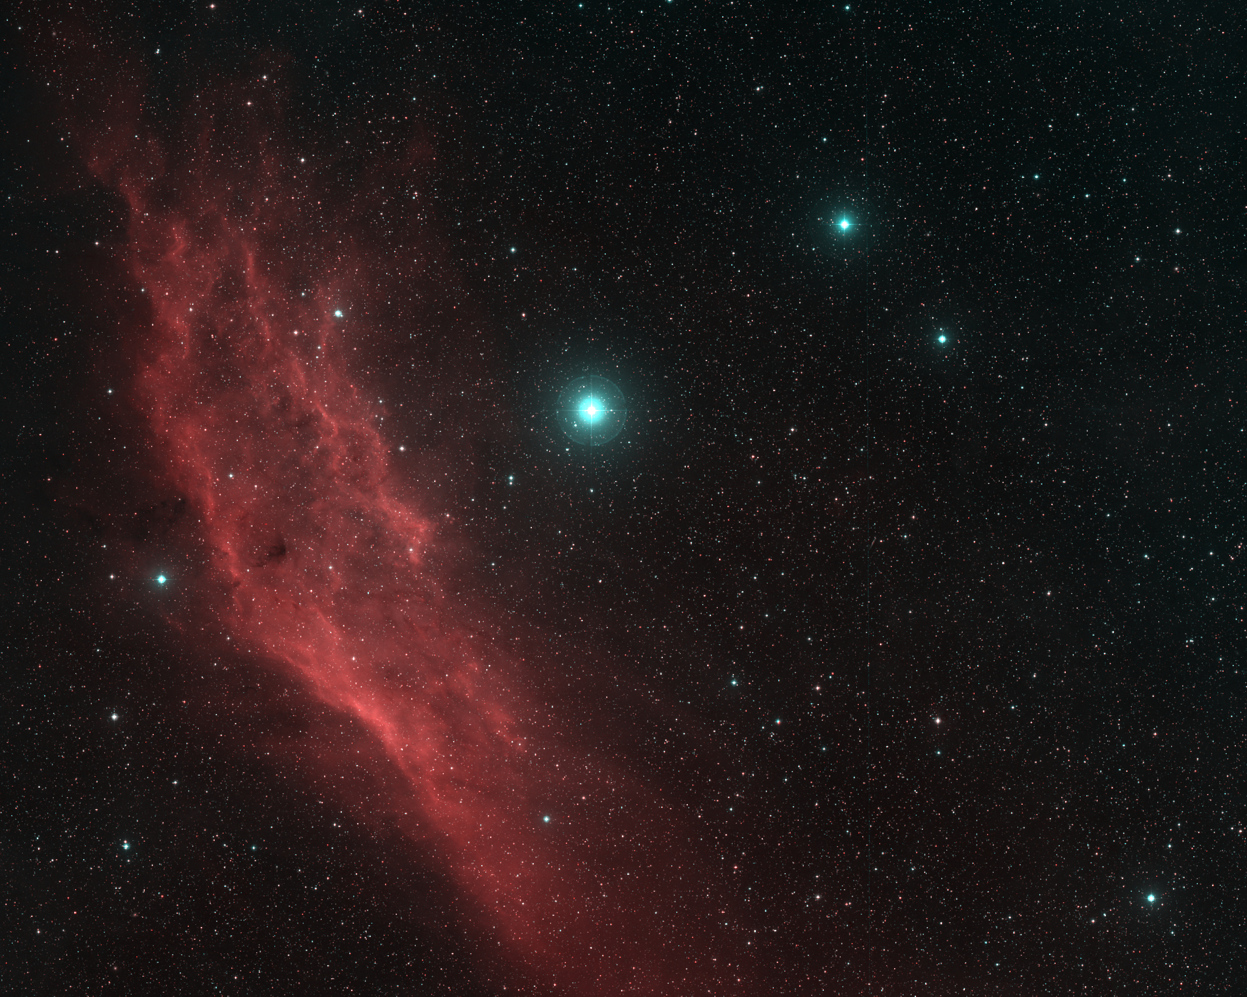 NGC 1499:  